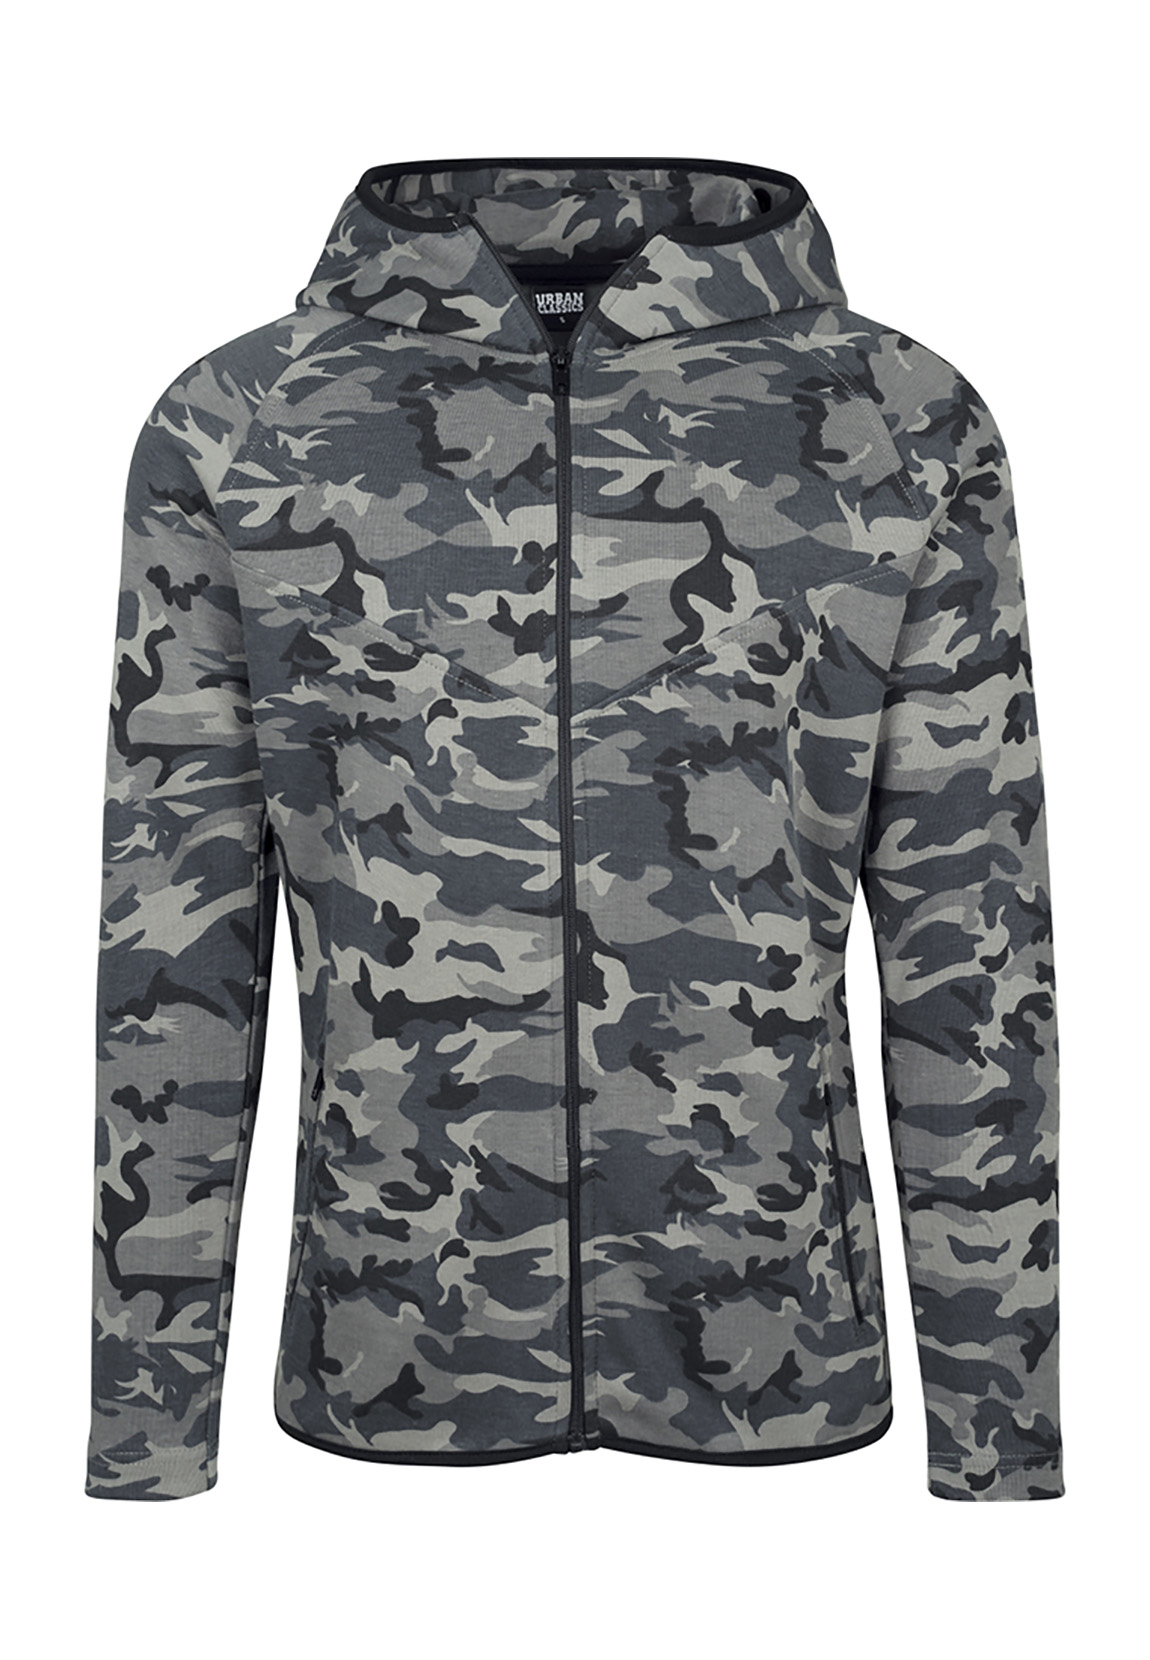 Urban Classics Herren Sweatjacket Interlock Camo Zip Jacket günstig online kaufen